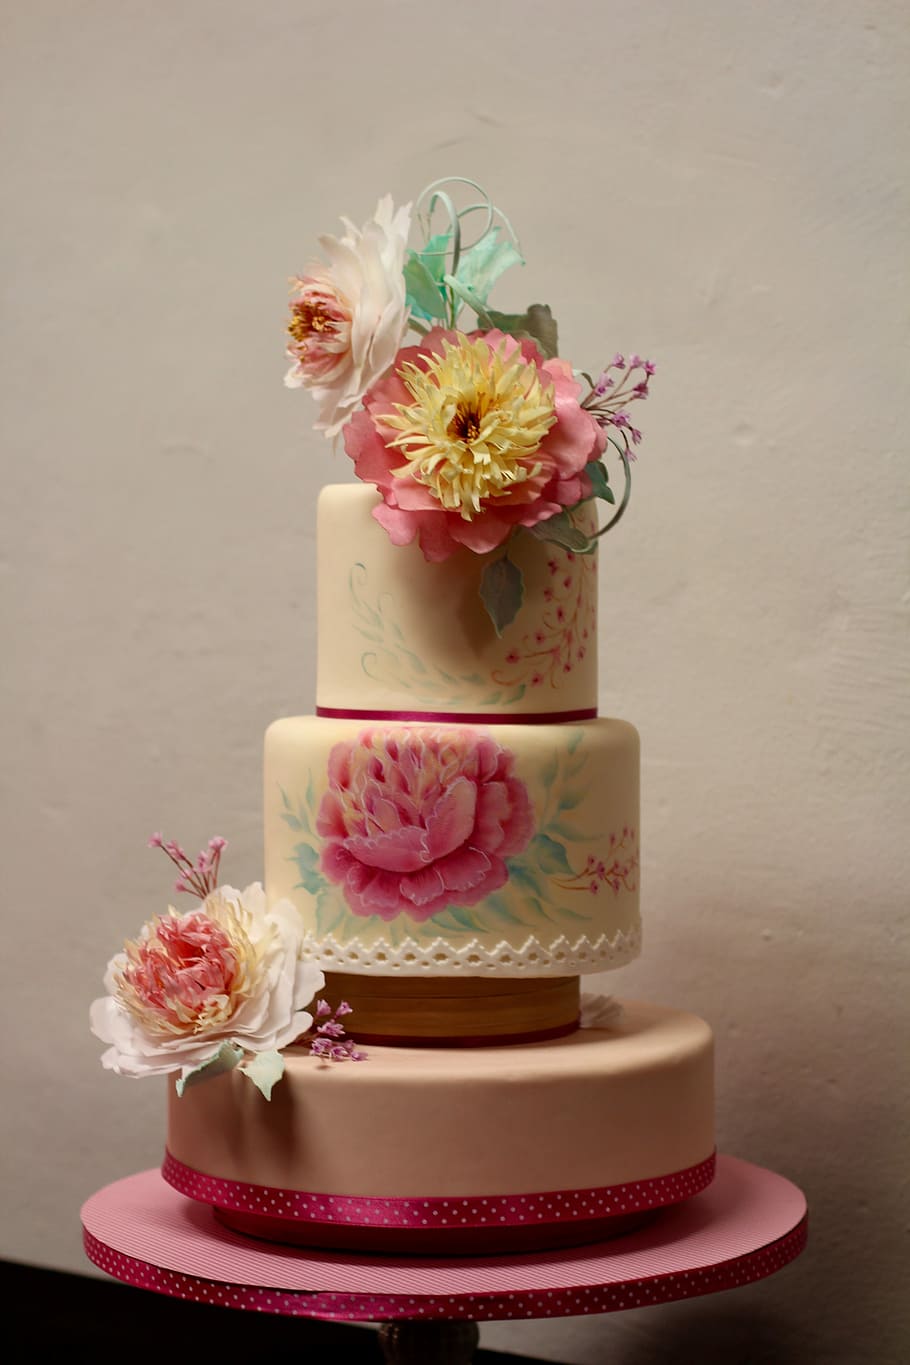 ケーキ, 装飾, 花, パイアート, 飾り, デコ, ピンク色, 結婚式, デザート, 花束